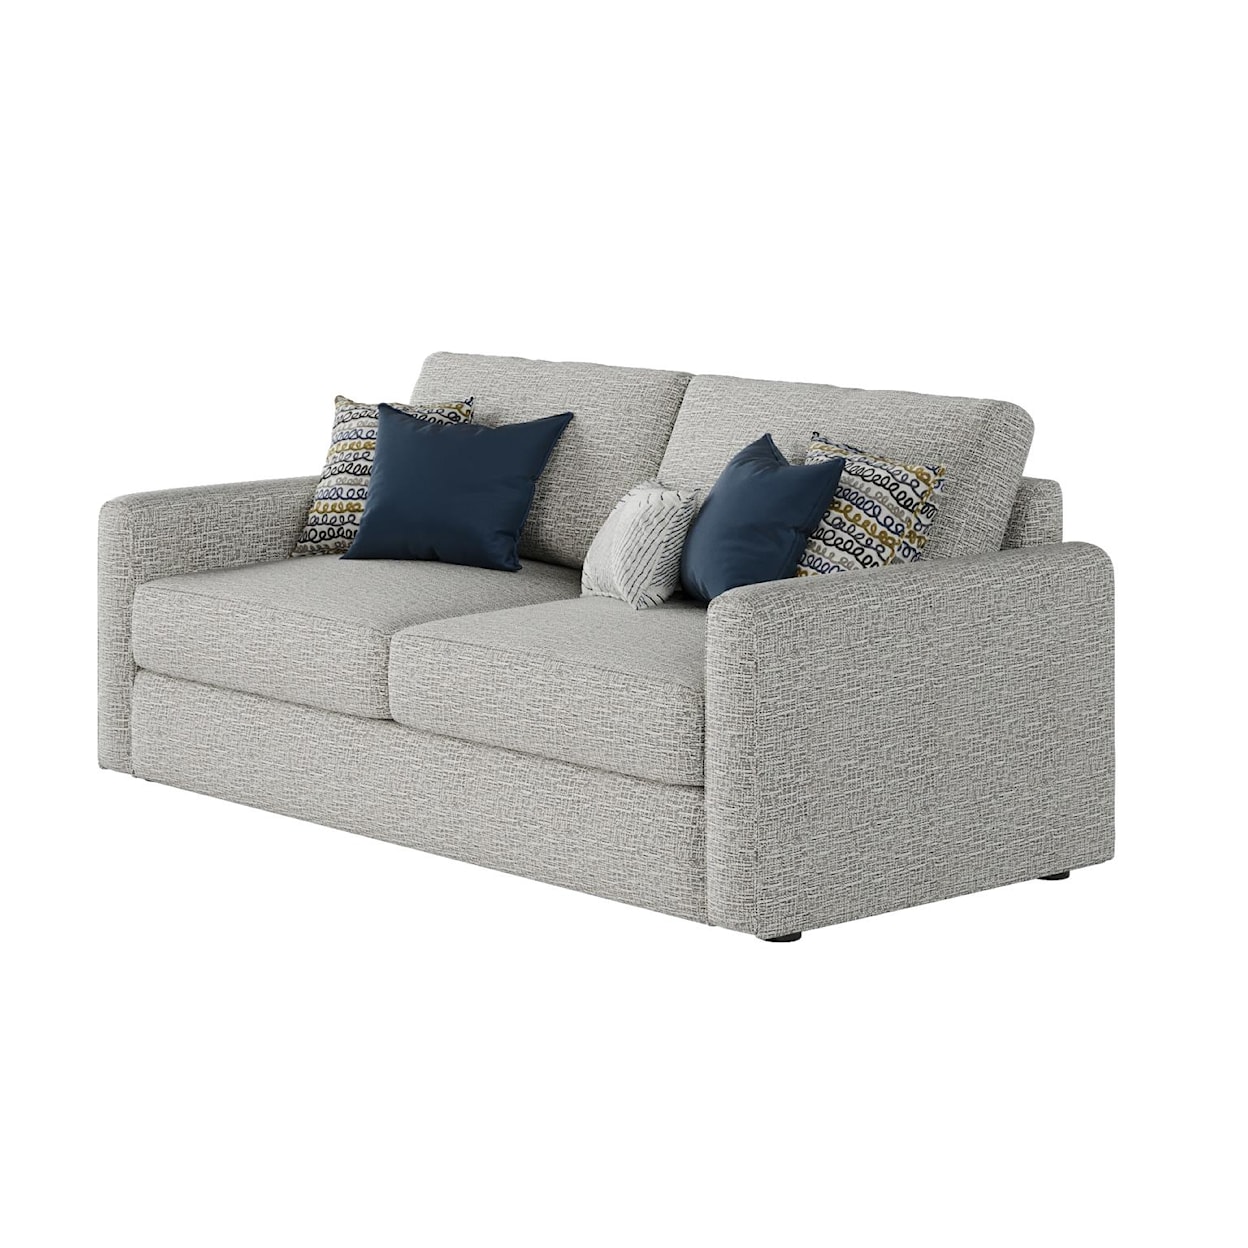 Fusion Furniture 7000 HARMER PLATINUM Sofa